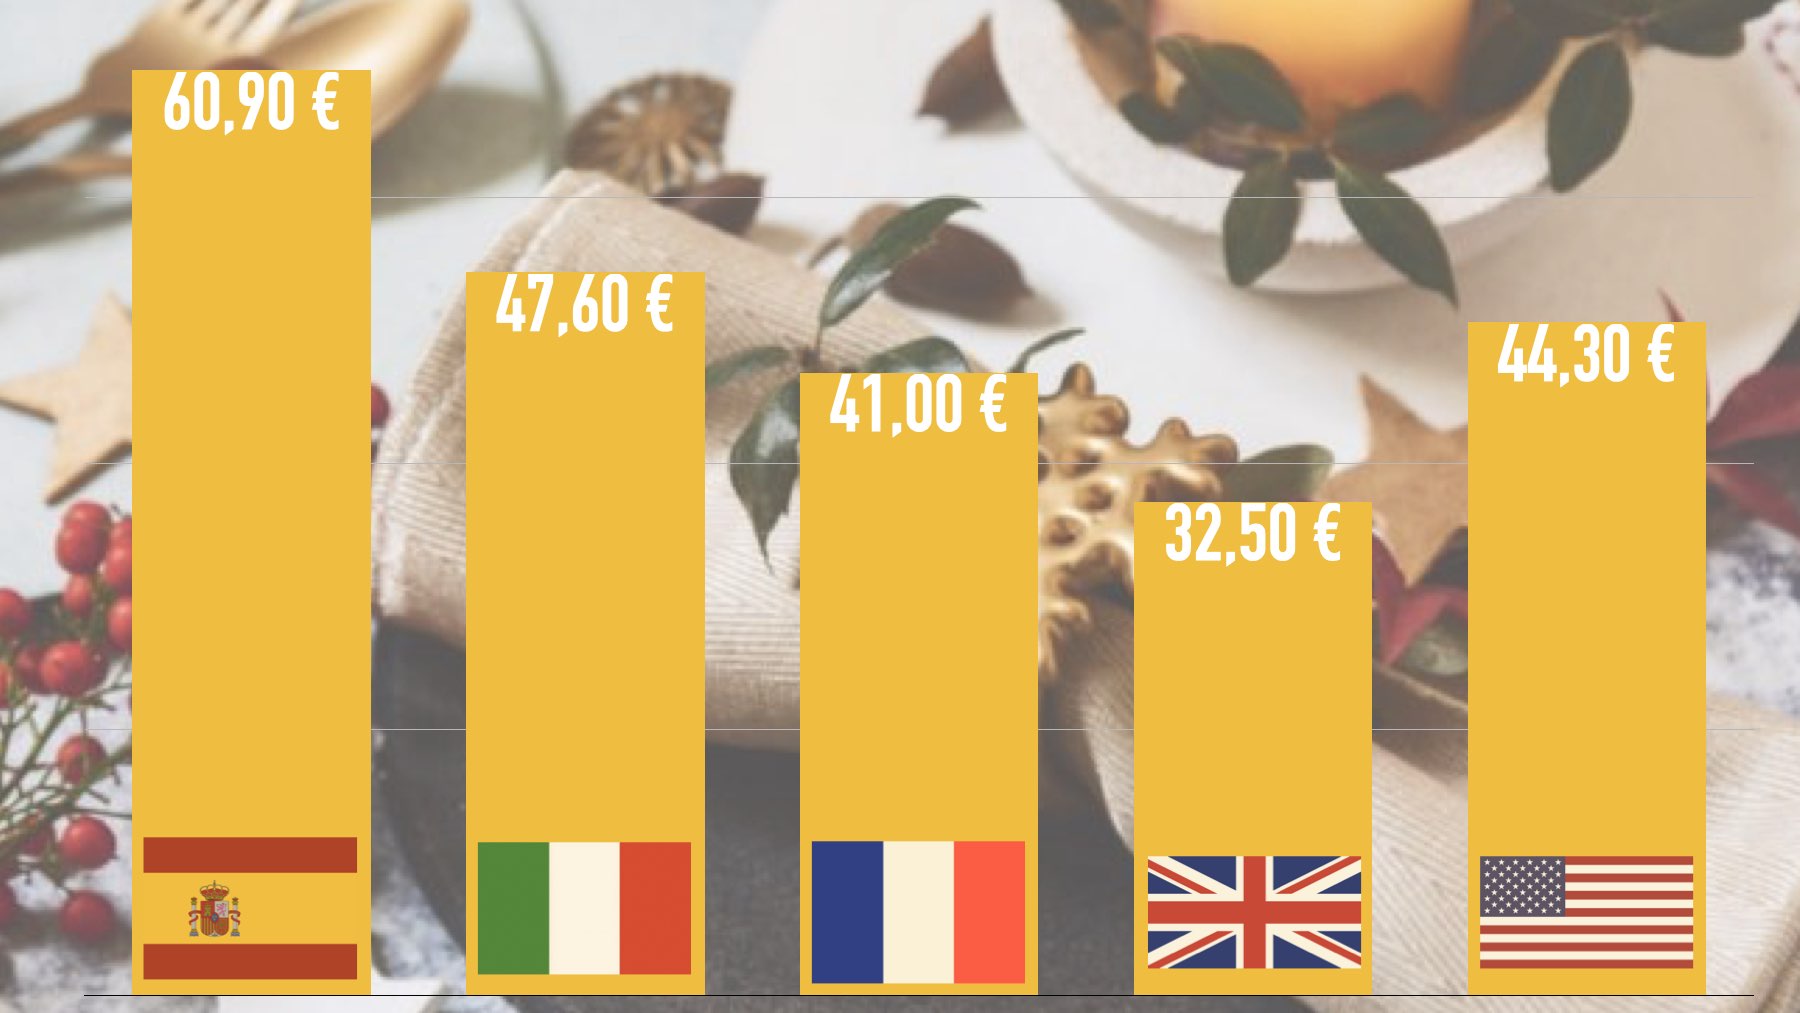 Gli spagnoli pagheranno 20 euro in più rispetto ai francesi o agli italiani